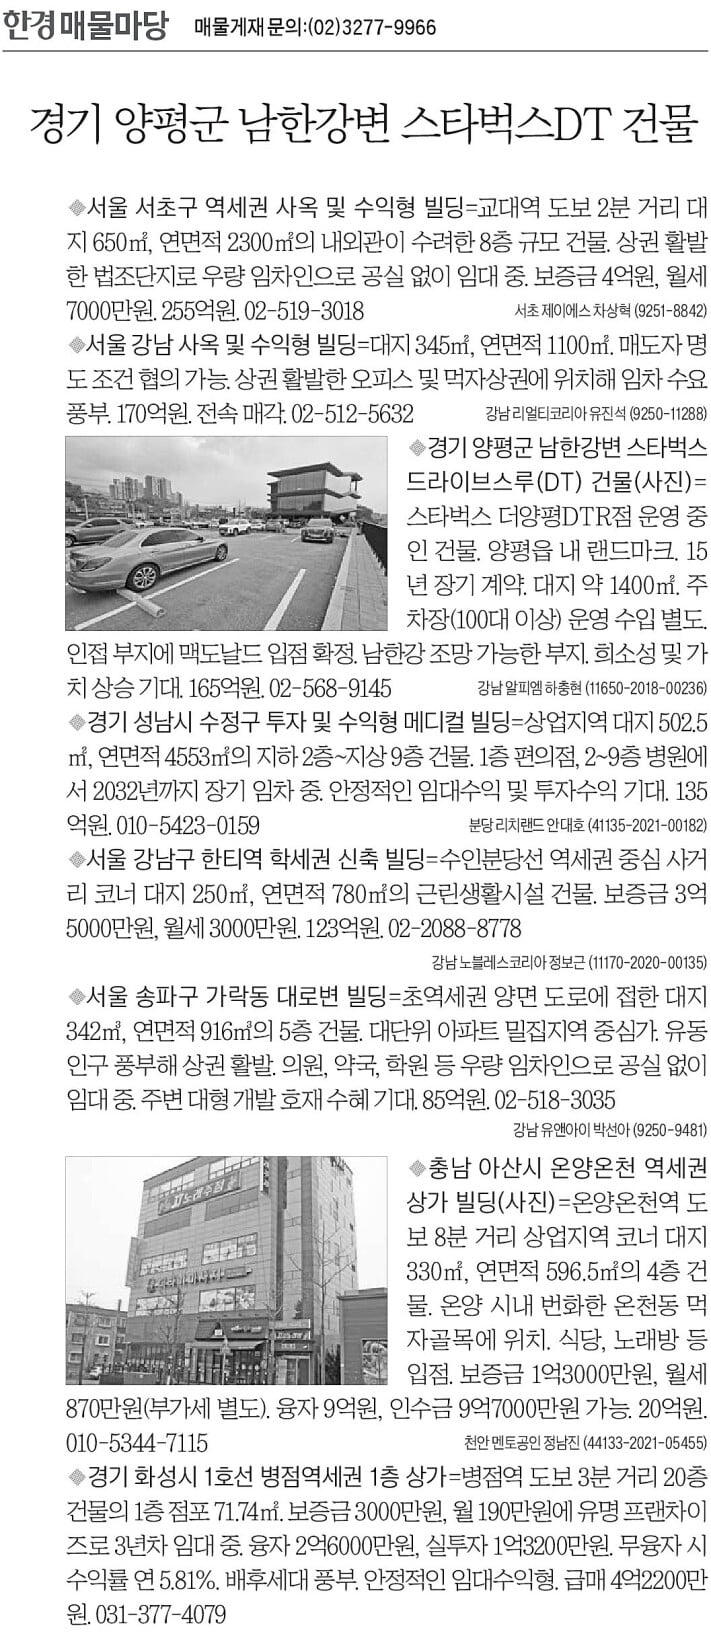 [한경 매물마당] 양평군 남한강변 스타벅스DT 건물 등 8건